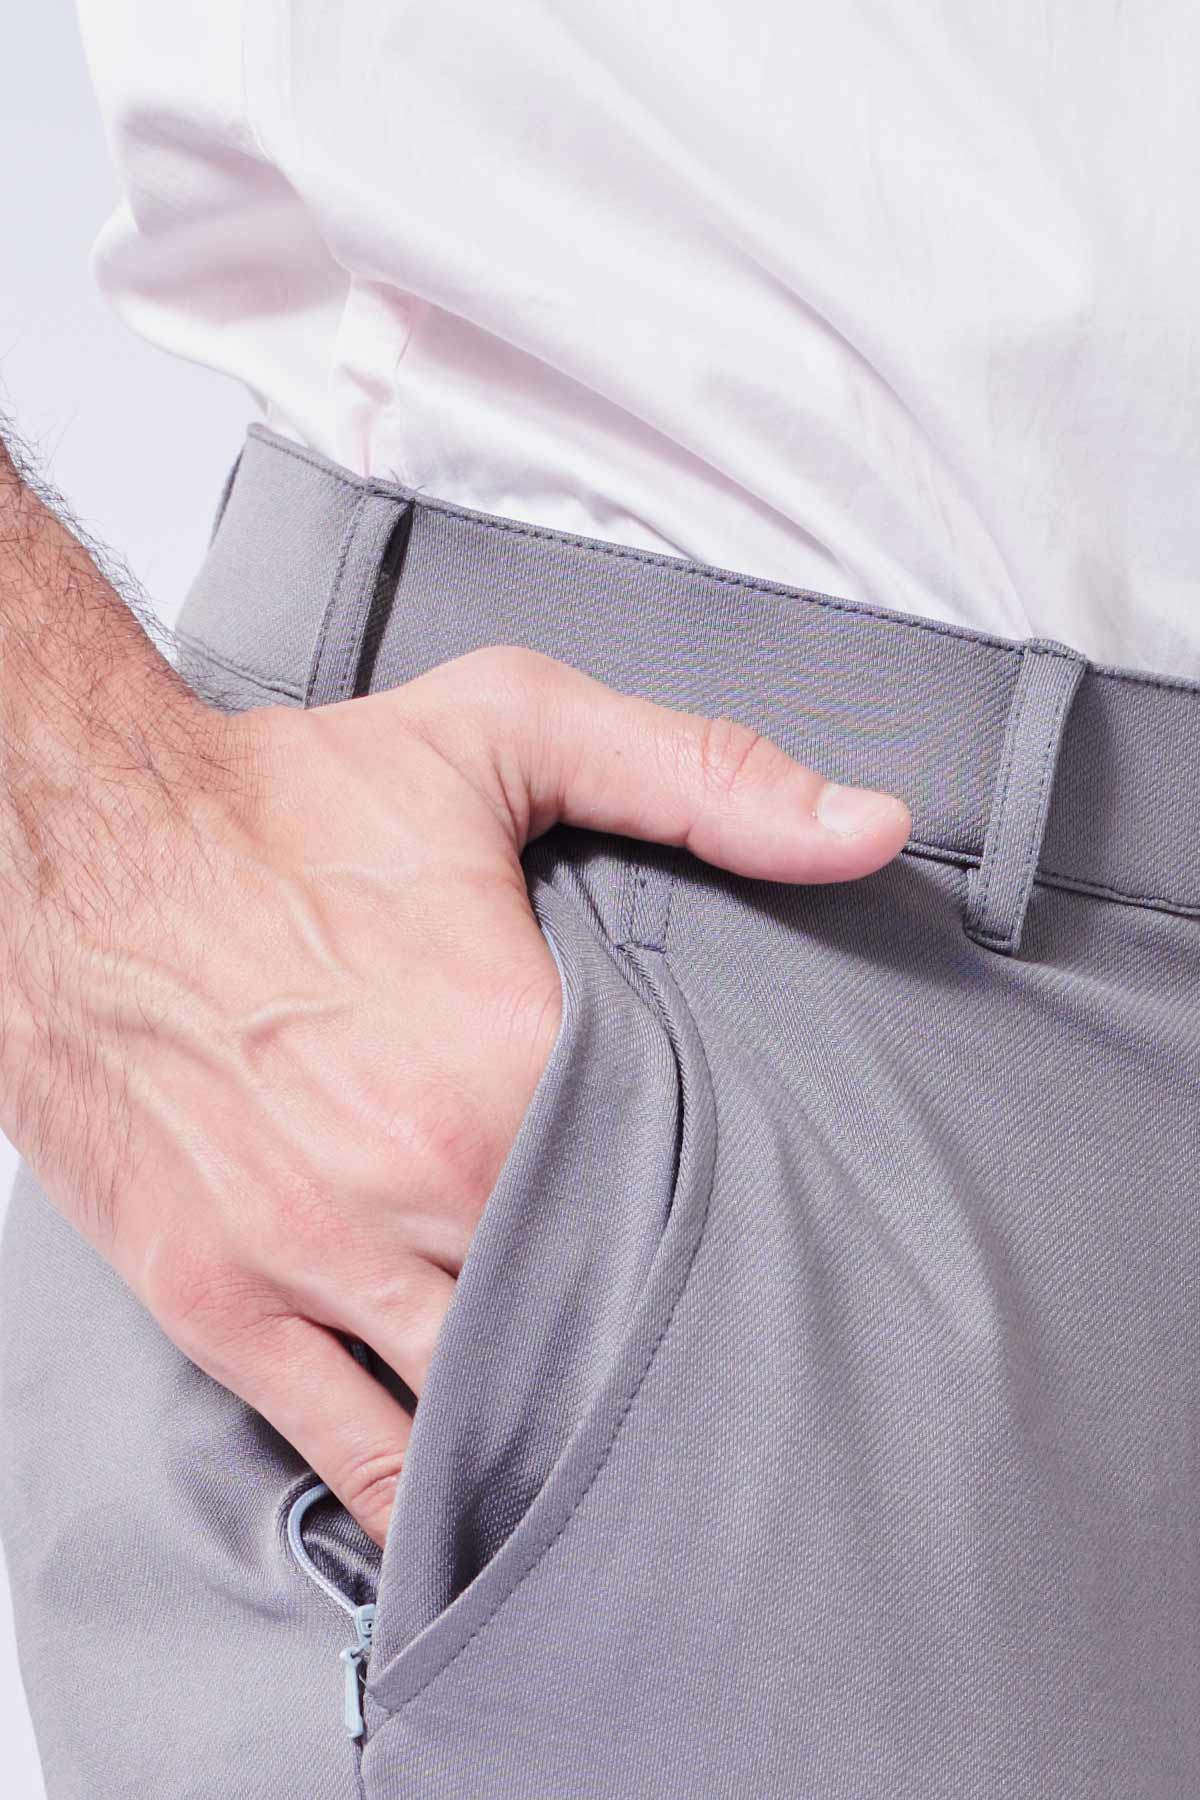 Steel Grey Pant